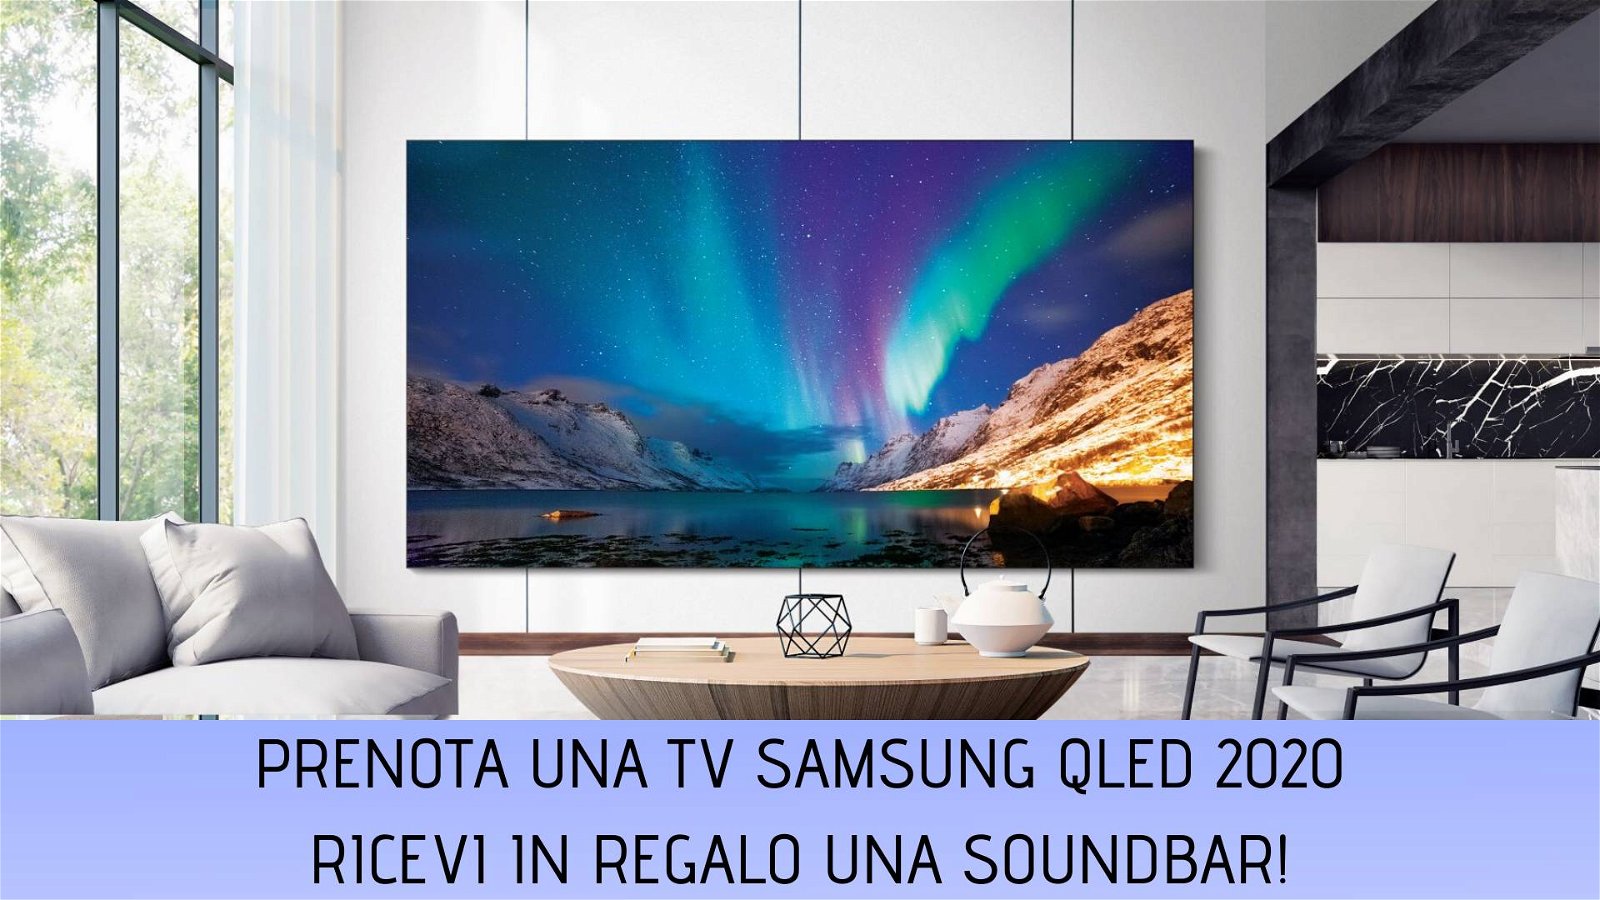 Immagine di Prenota i nuovi Samsung QLED 2020, in regalo la soundbar Q70R Dolby Atmos!